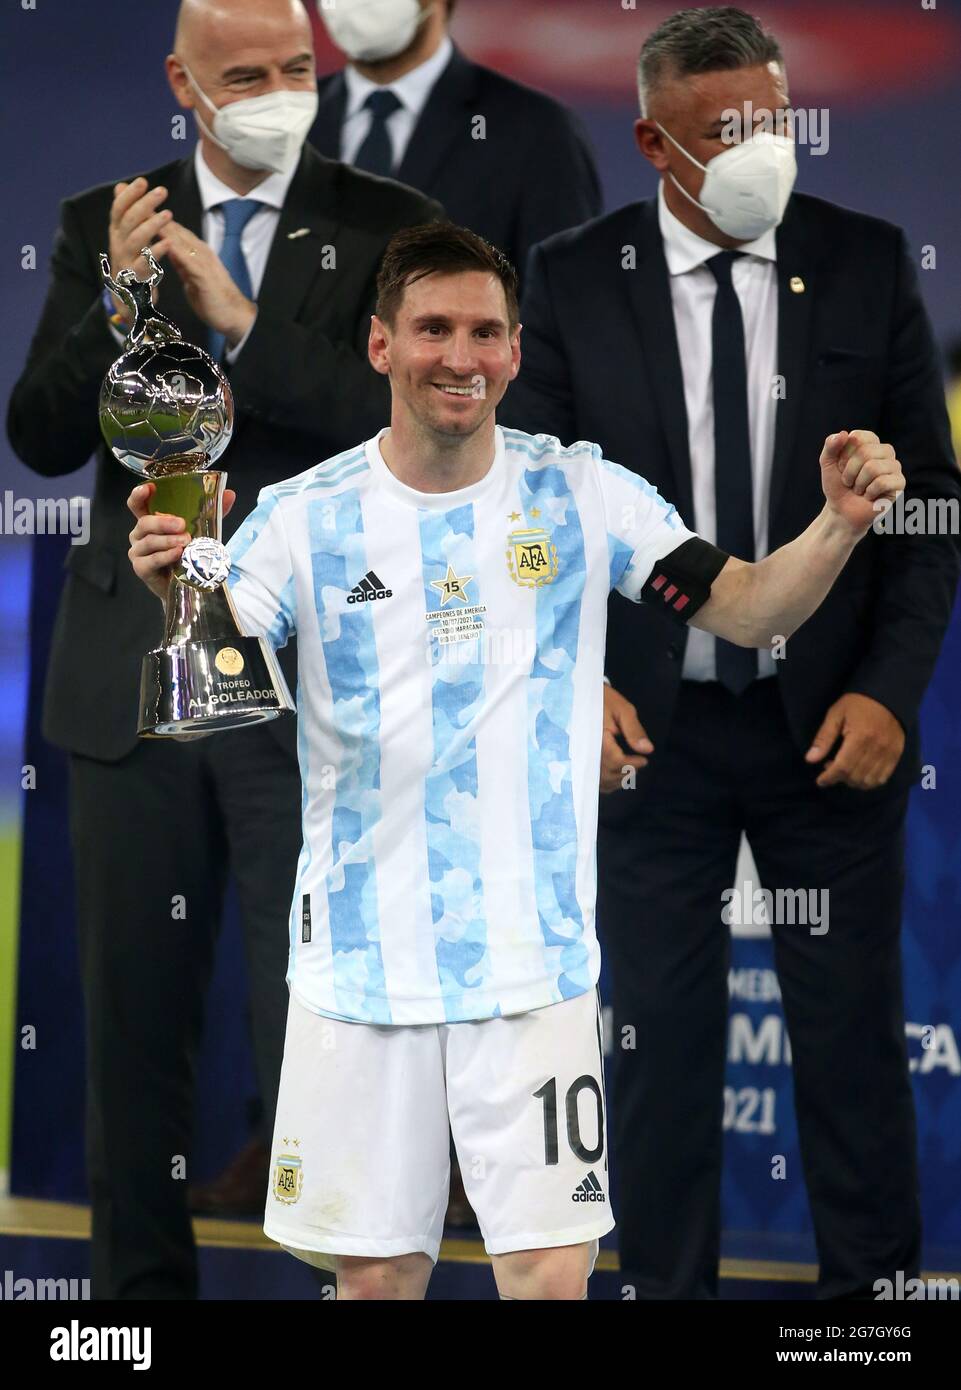 Lionel Messi: Siêu sao bóng đá người Argentina được nâng cao cúp vô địch Copa America 2021 tại sân Maracana, Brazil. Hãy cùng đón xem khoảnh khắc hạnh phúc này qua tranh ảnh đầy cảm xúc.